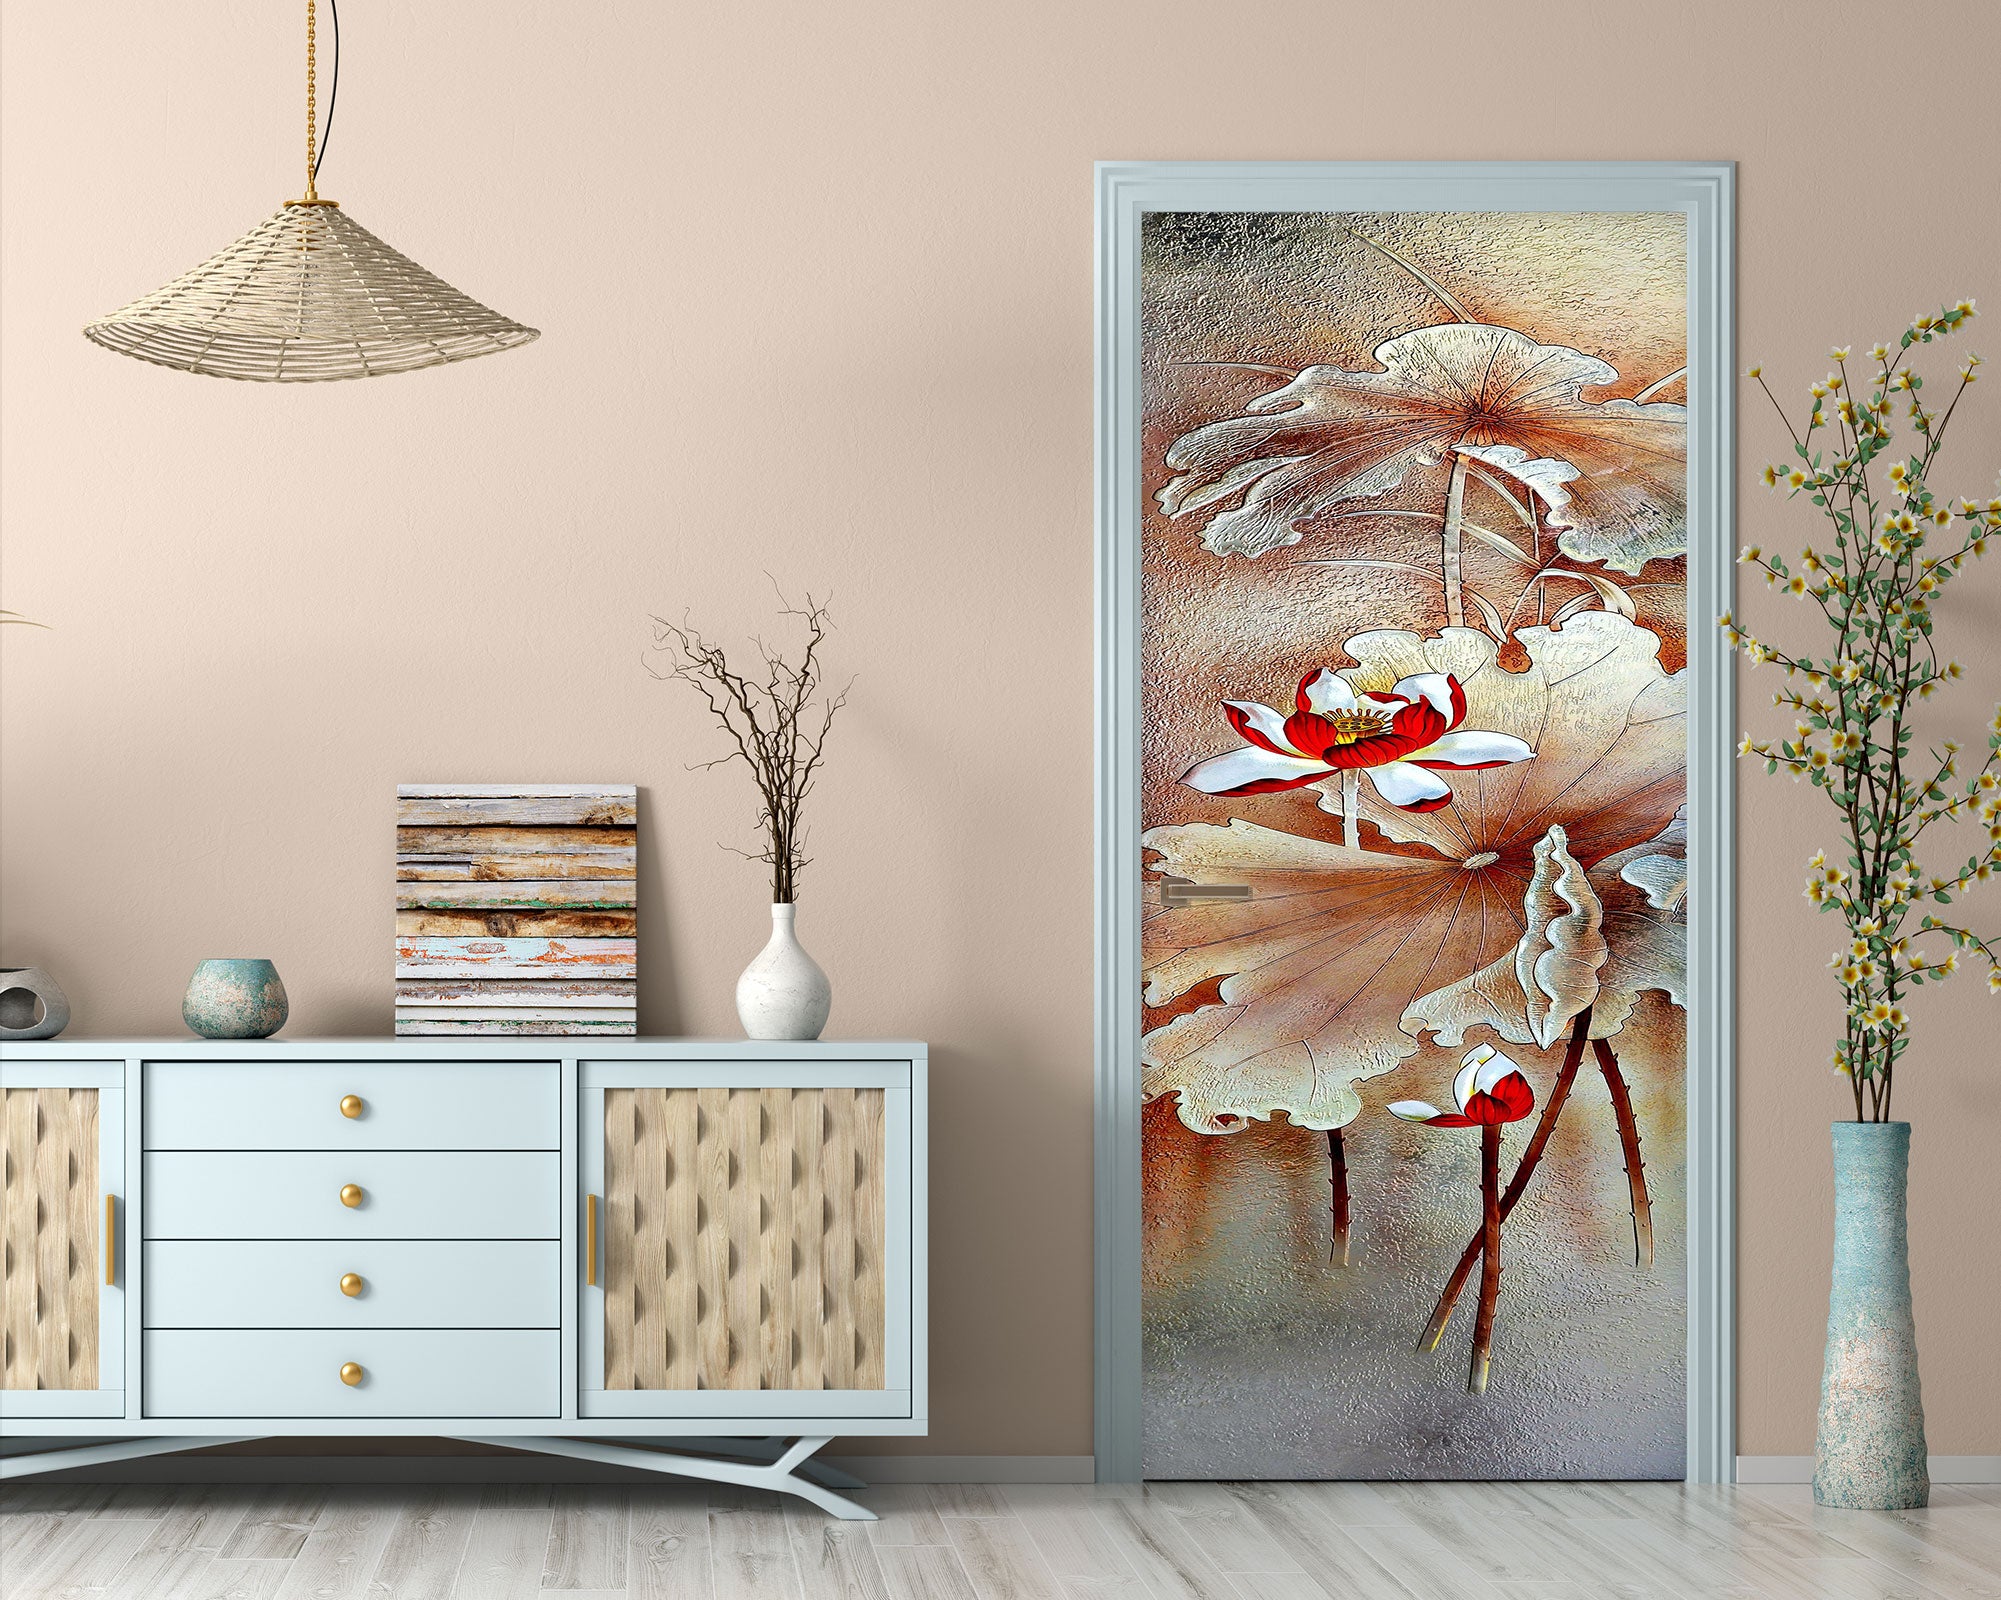 Tranh cửa hoa sen đỏ 3D giúp đưa một chút sắc hồng tươi tắn vào không gian phòng bạn. Hình ảnh 3D chân thực, phong phú như những bông hoa sen đang nở rộ sẽ càng khiến bạn cảm thấy thư giãn, thoải mái hơn.